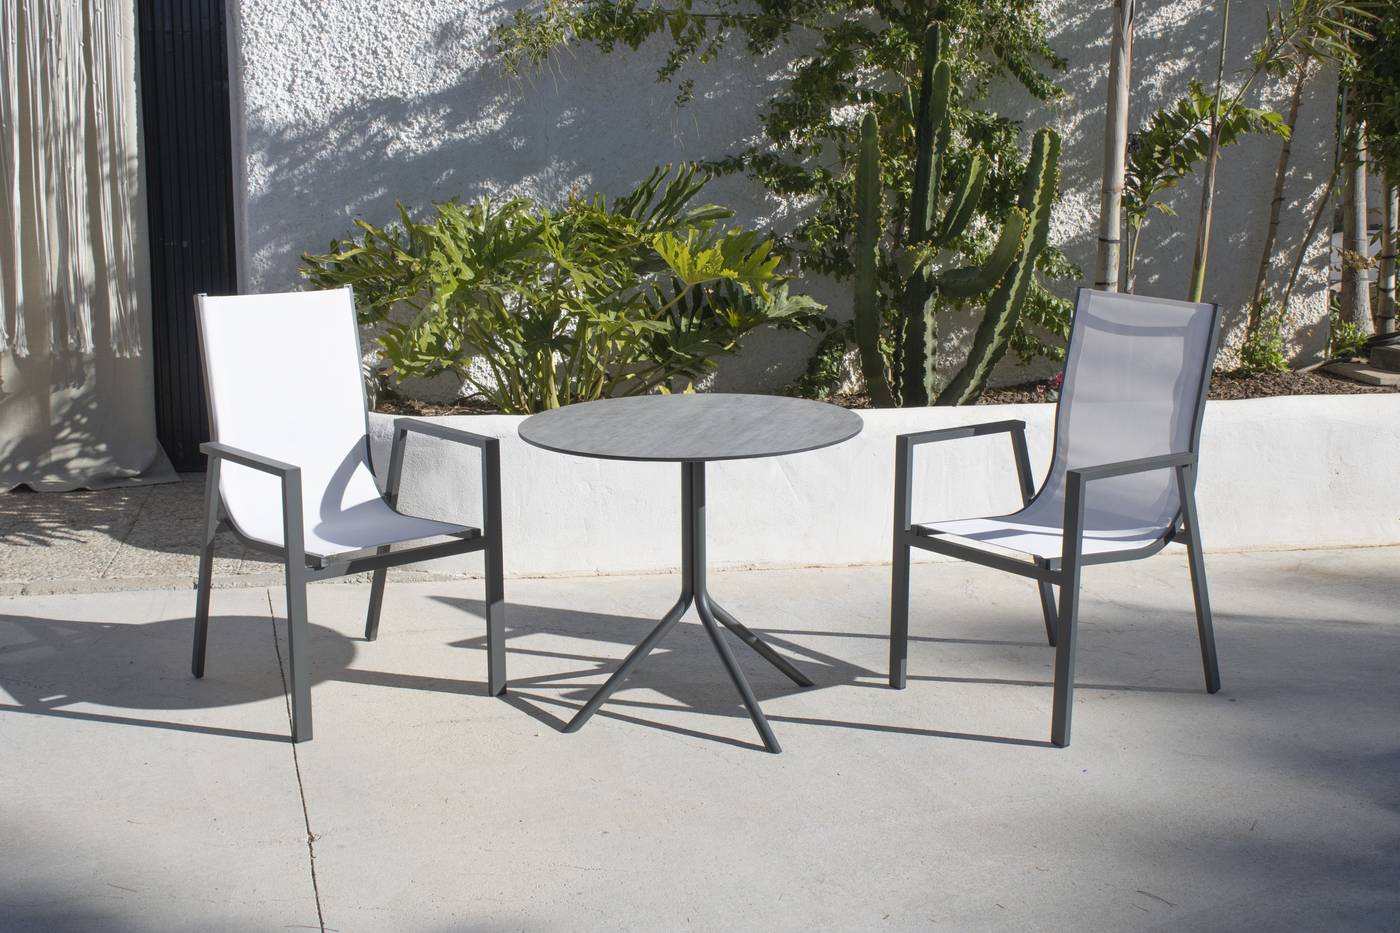 Sillón Aluminio Sidney - Sillón apilable de aluminio color blanco o antracita, con asiento y respaldo integrado de textilen